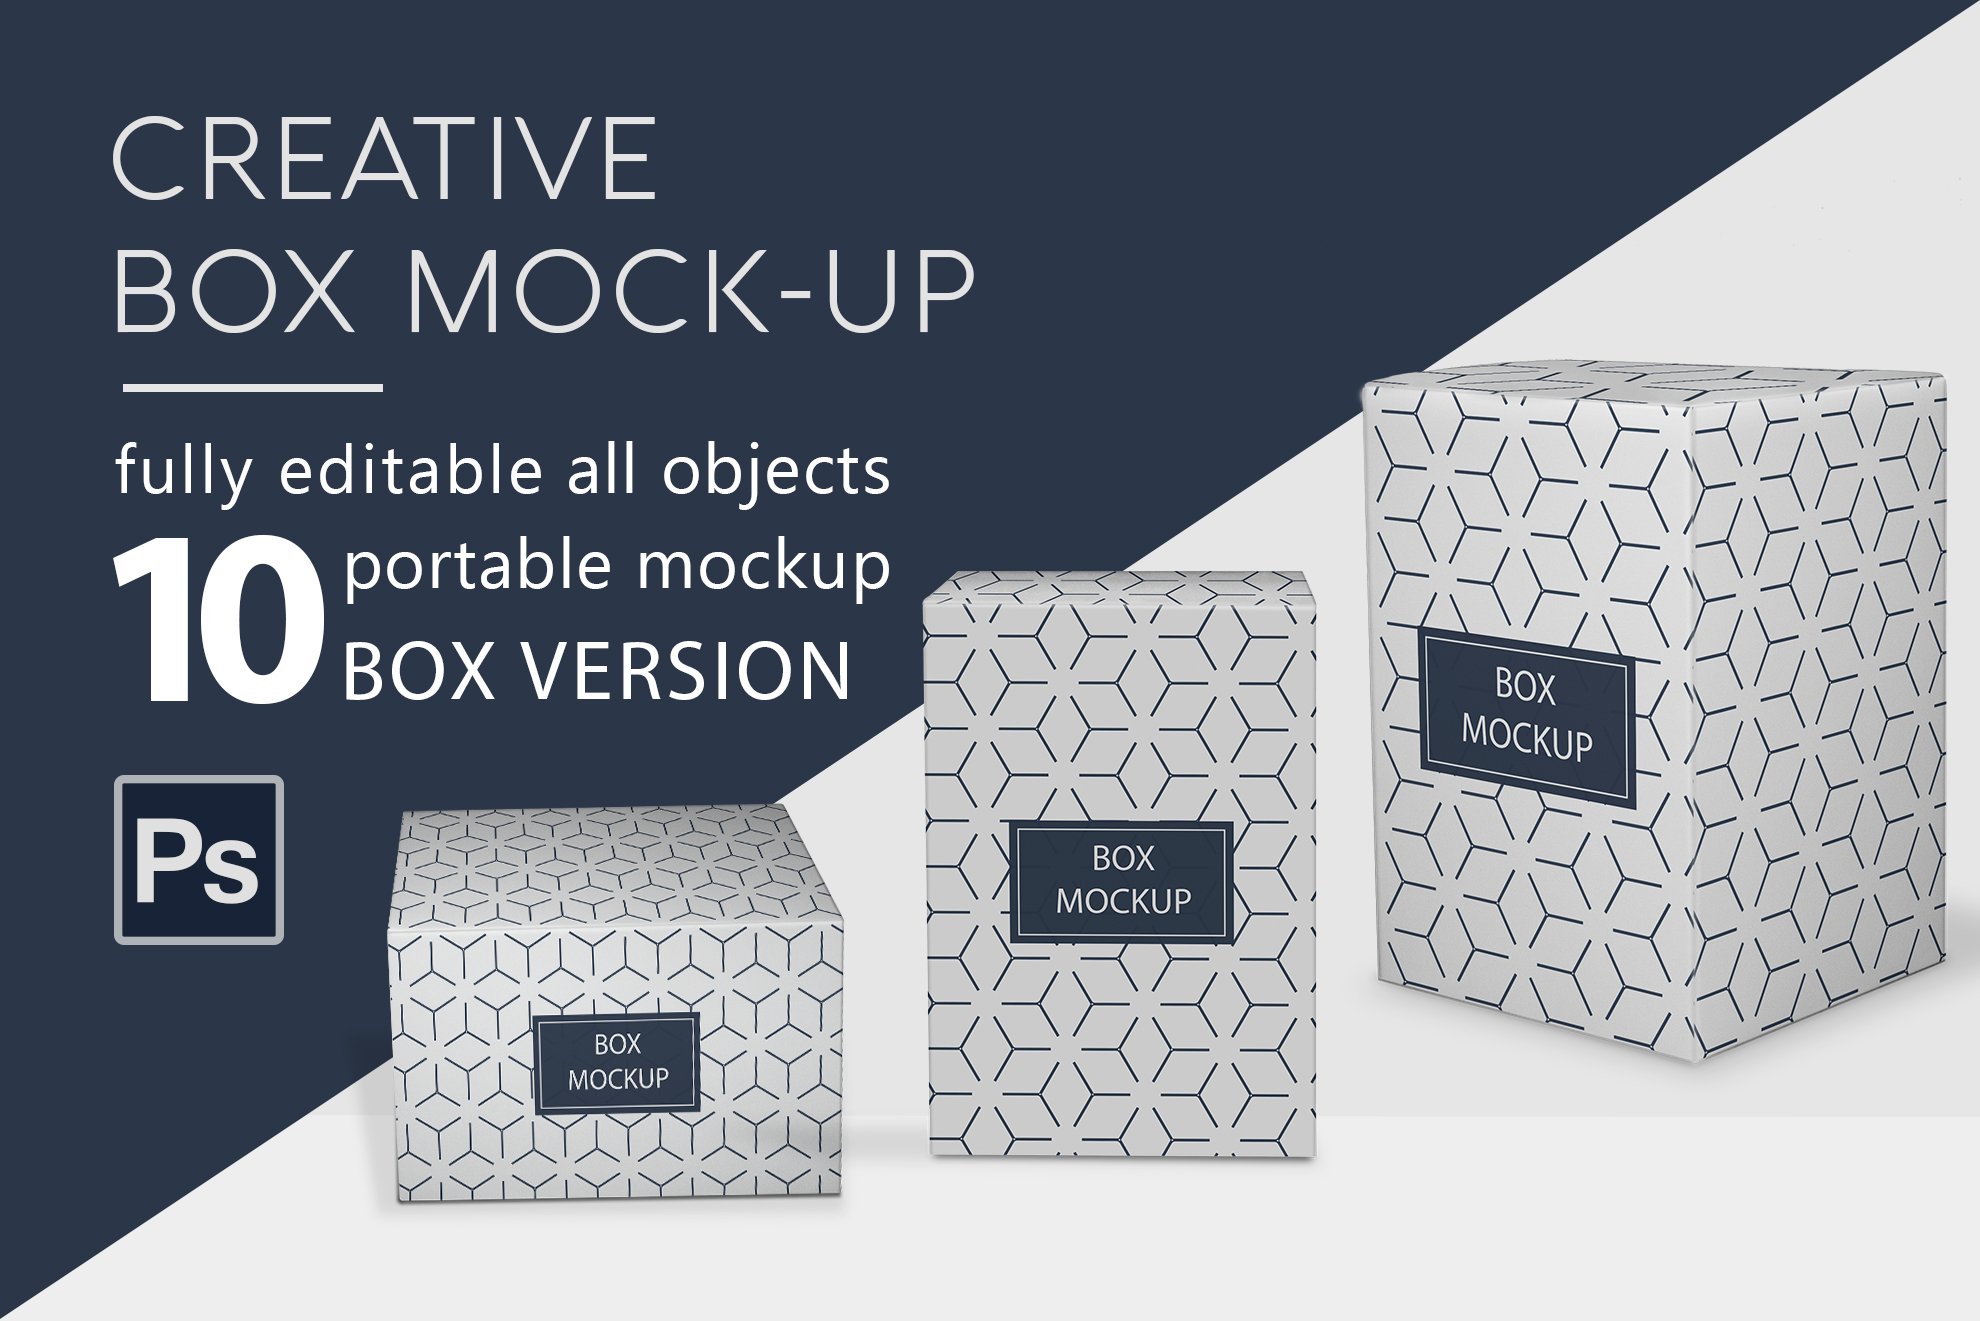 Box Mockup cover image.